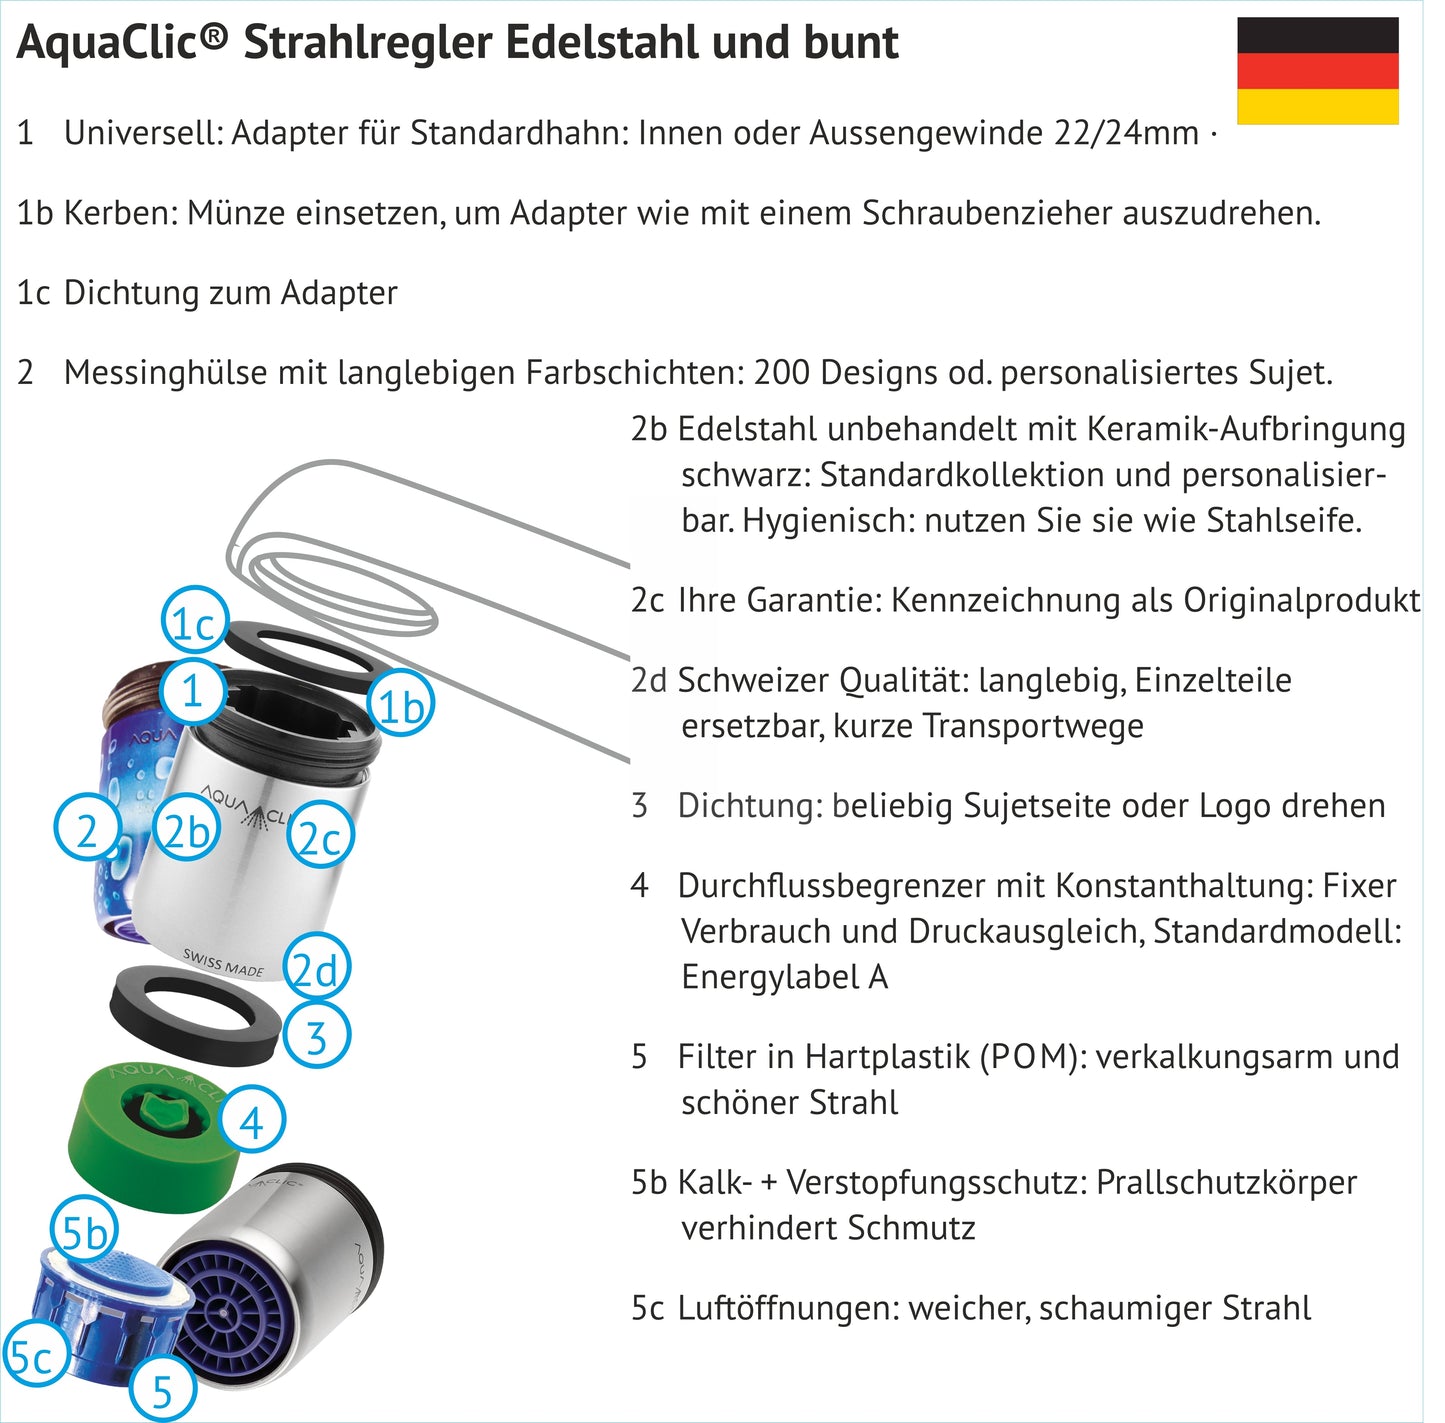 Zeichnung in Explosionsform eines AquaClic-Strahlreglers mit Innenleben und Bezeichnung der Einzelteile, Deutsch